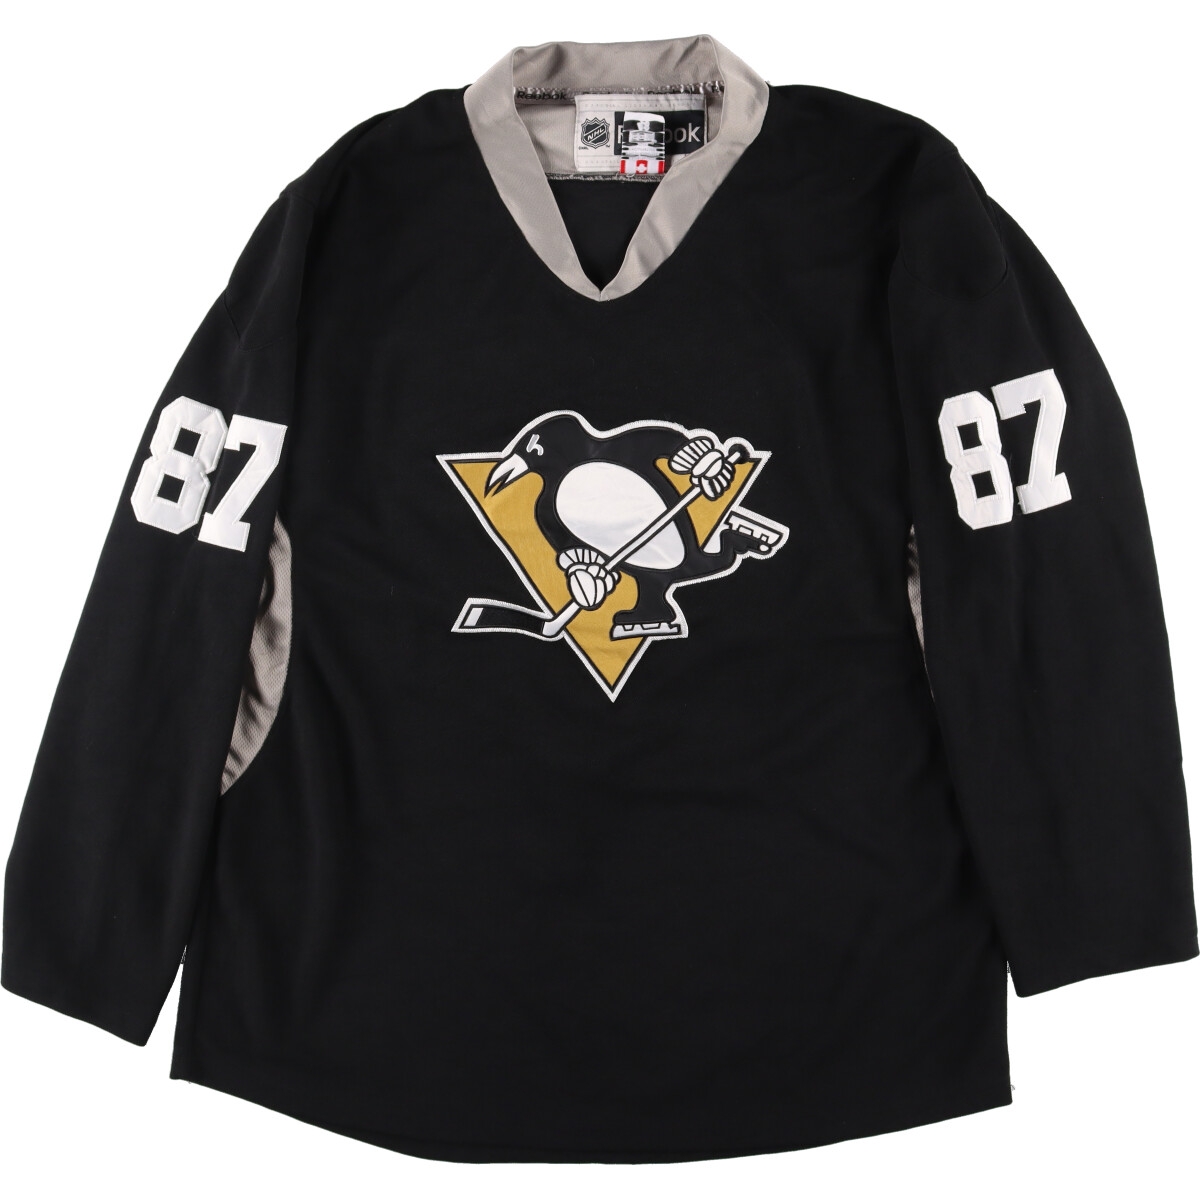 カナダ製《古着》リーボック NHL ペンギンズ チーム ゲームシャツ